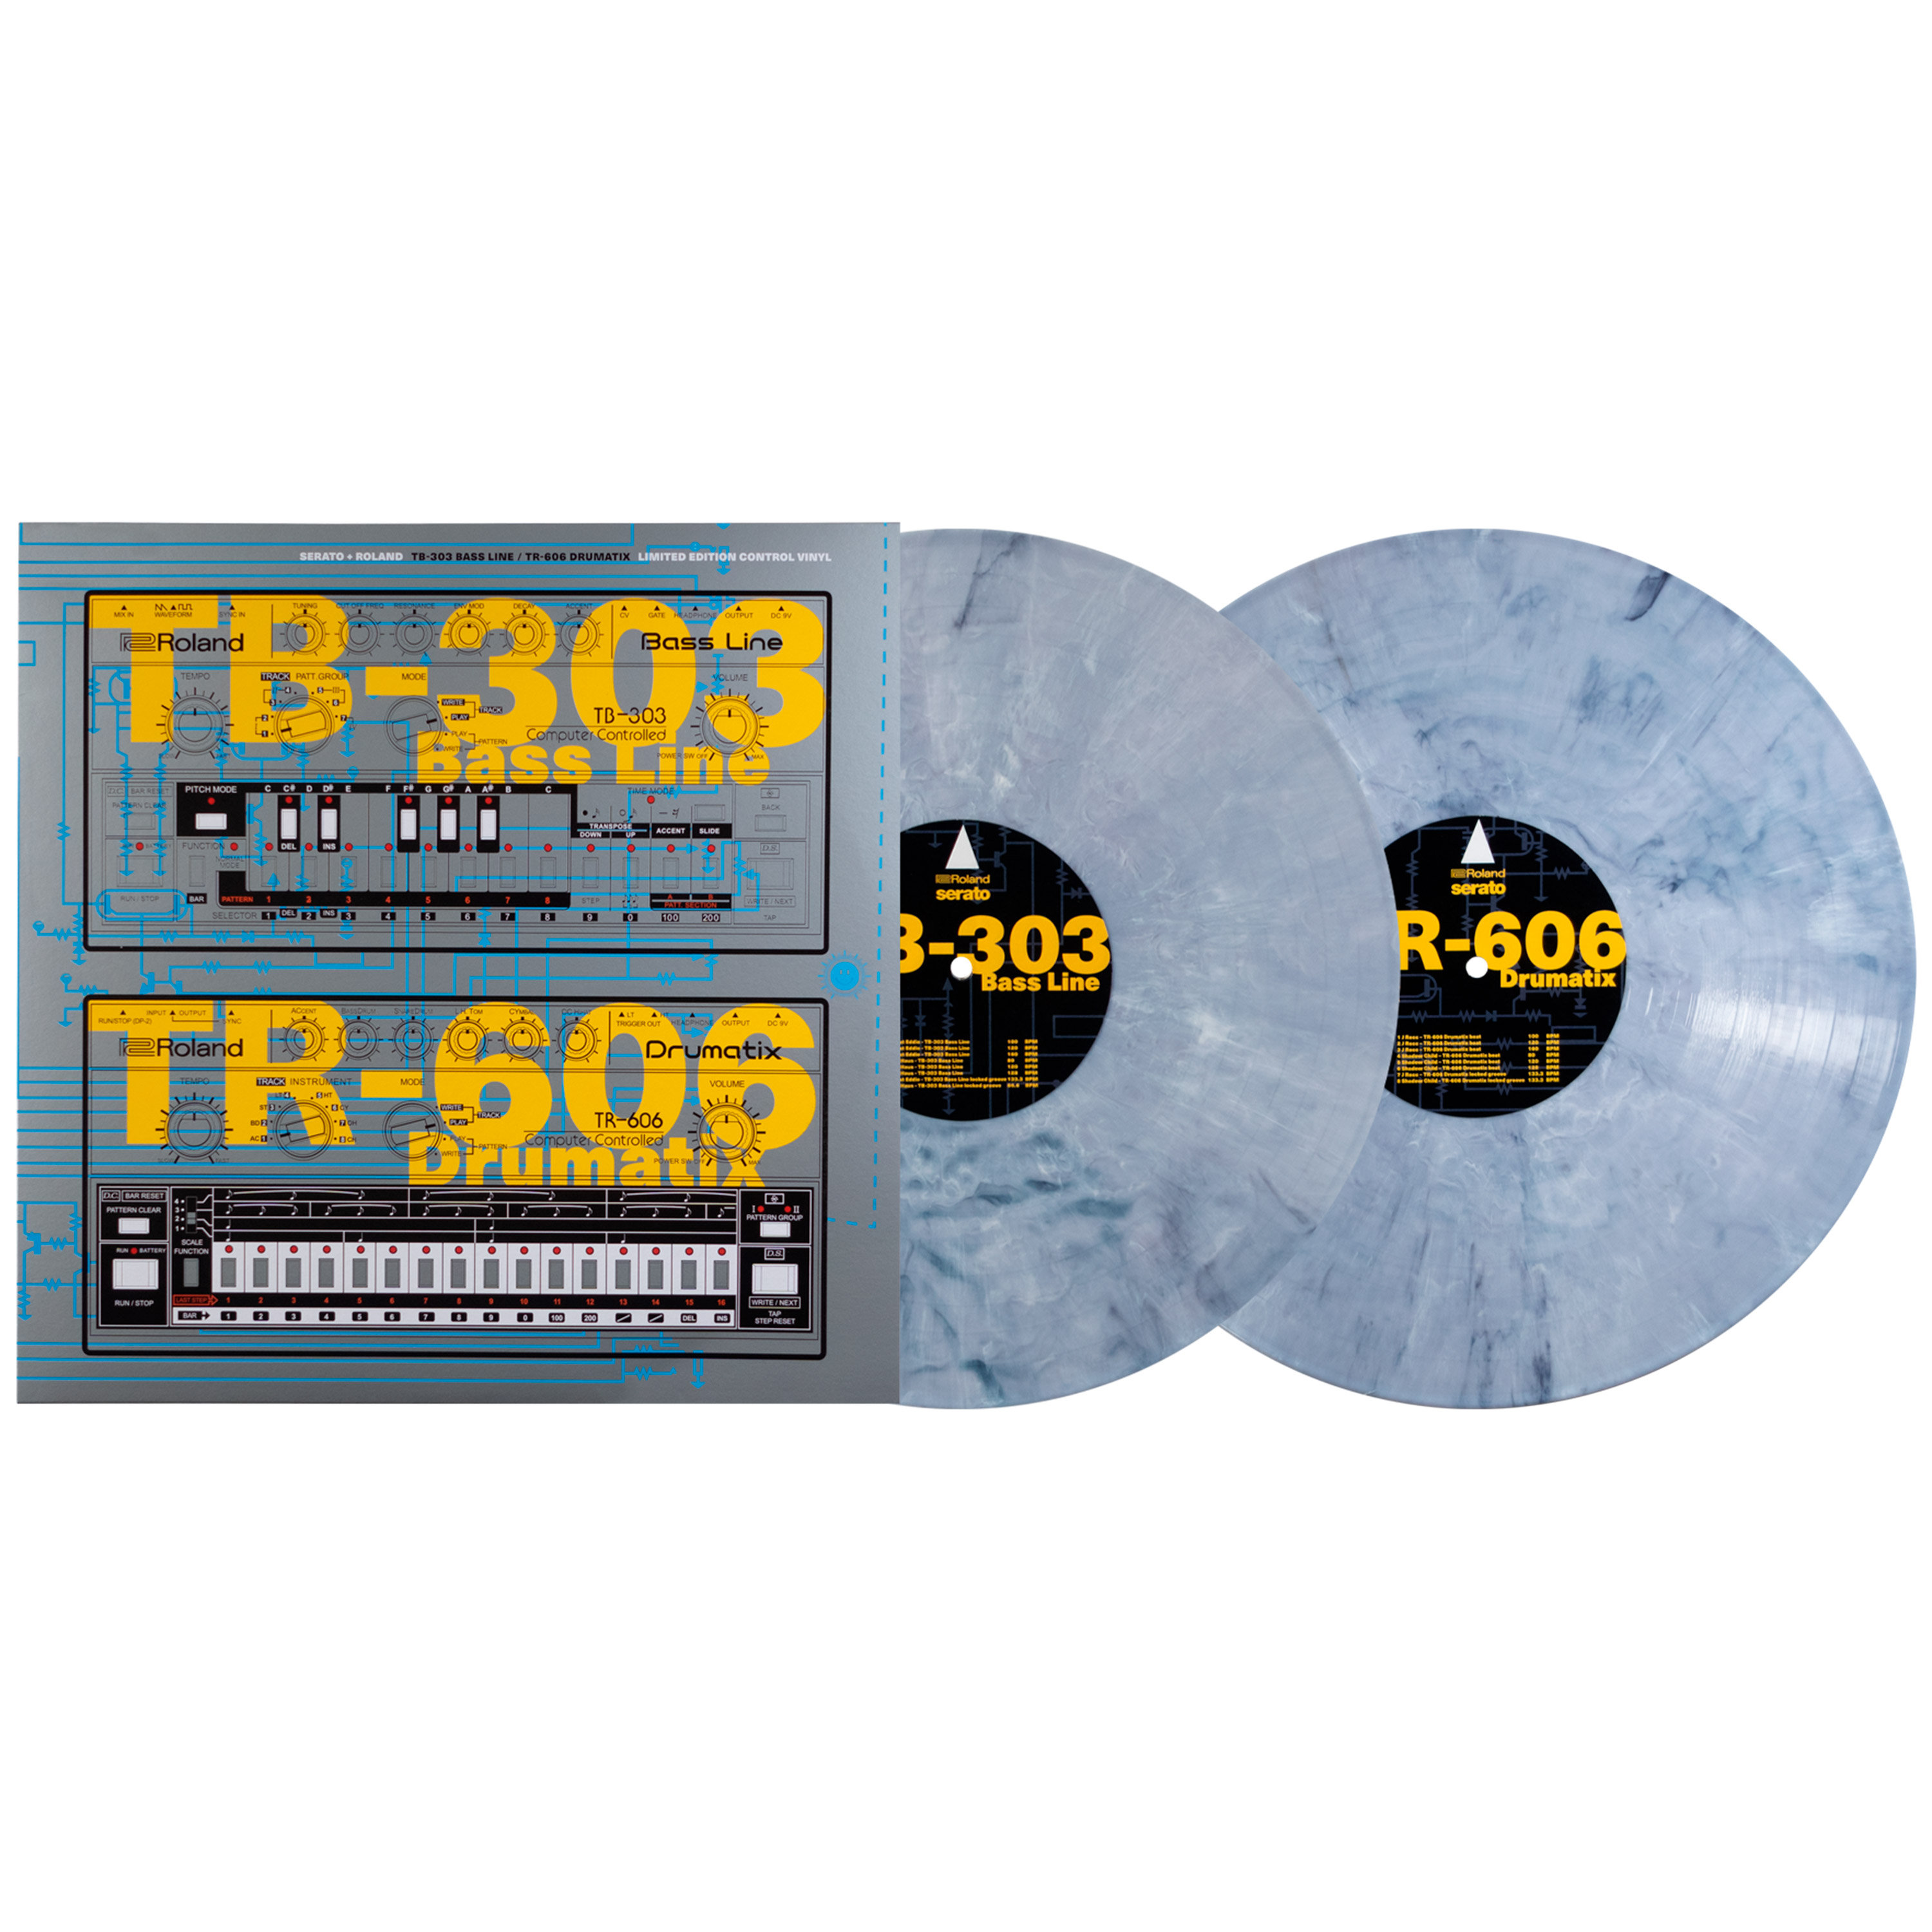 Serato 2x12" TB-303 / TR-606 Limited Edition